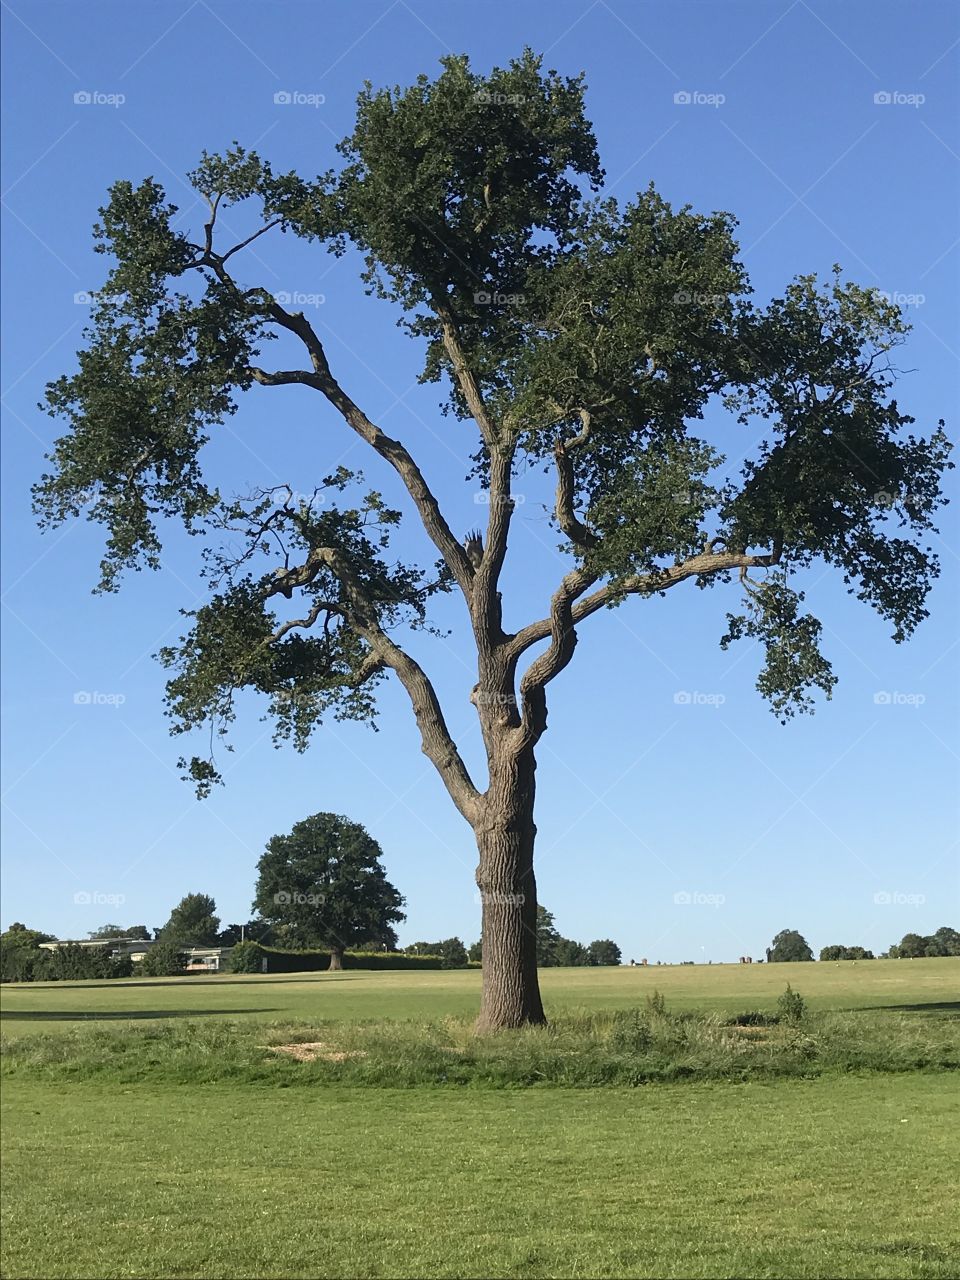 Tree beauty